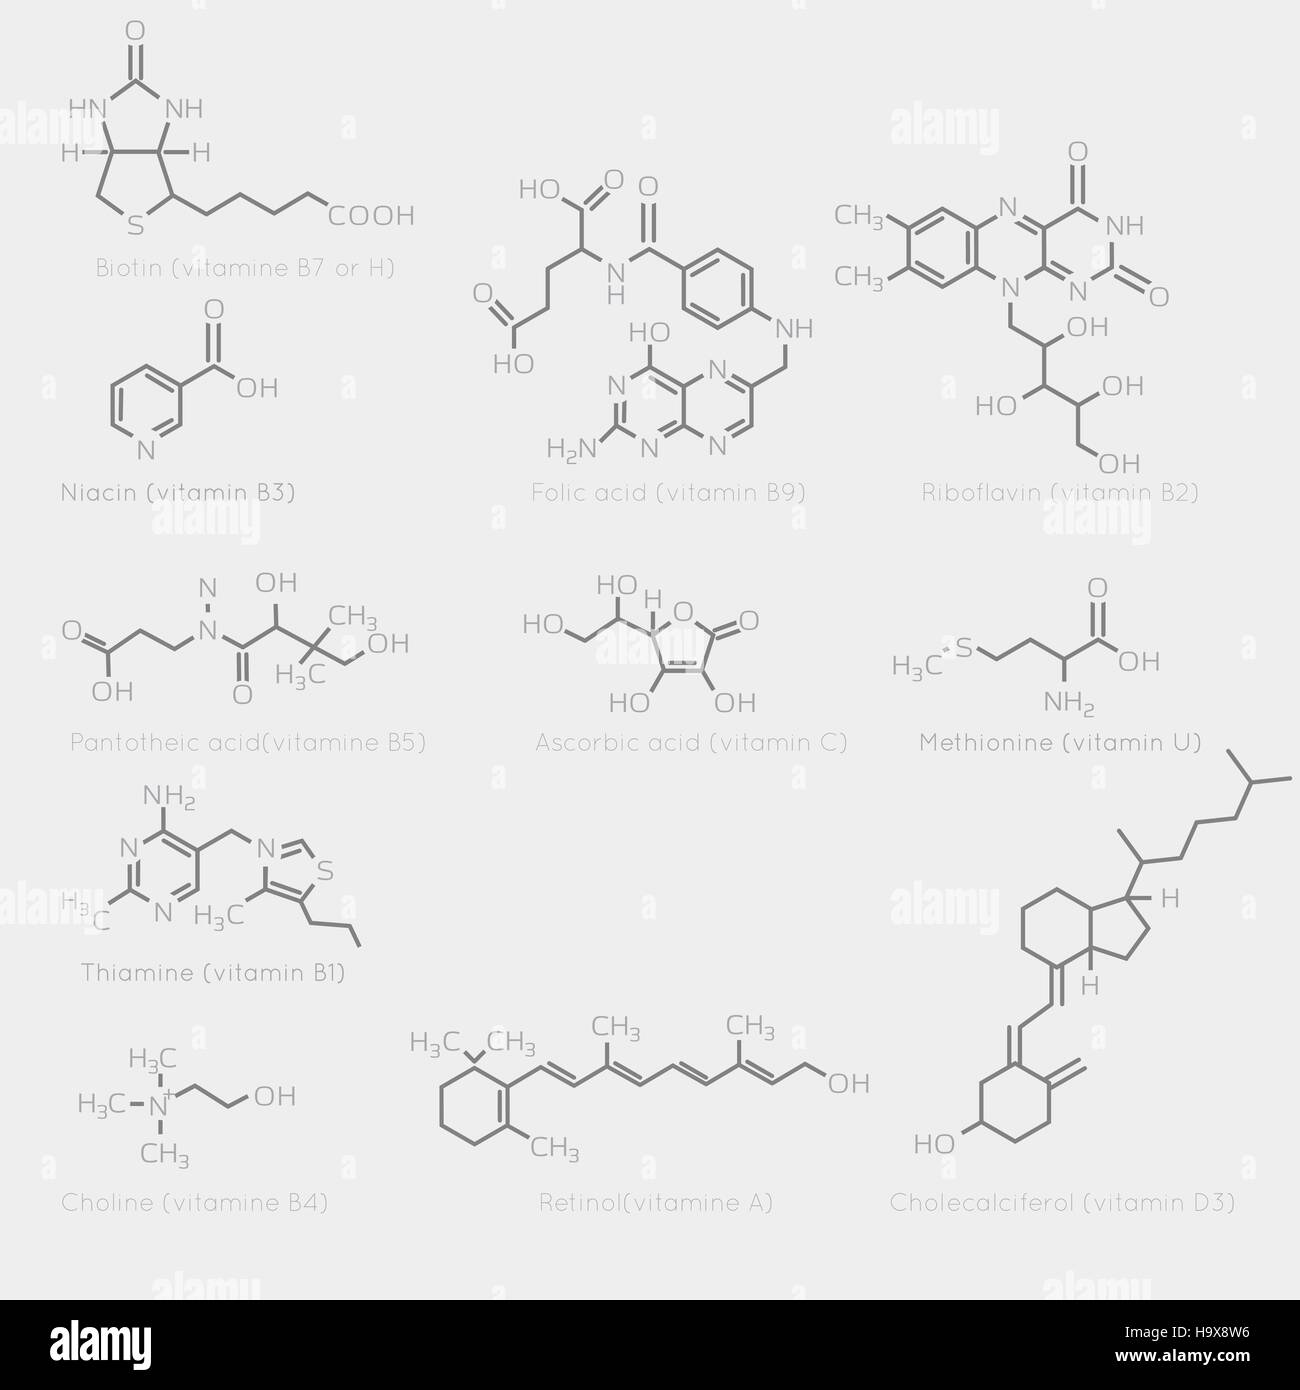 Le formule di scheletro di alcune vitamine. Immagine schematica chimica di molecole organiche e nutrienti. Illustrazione Vettoriale